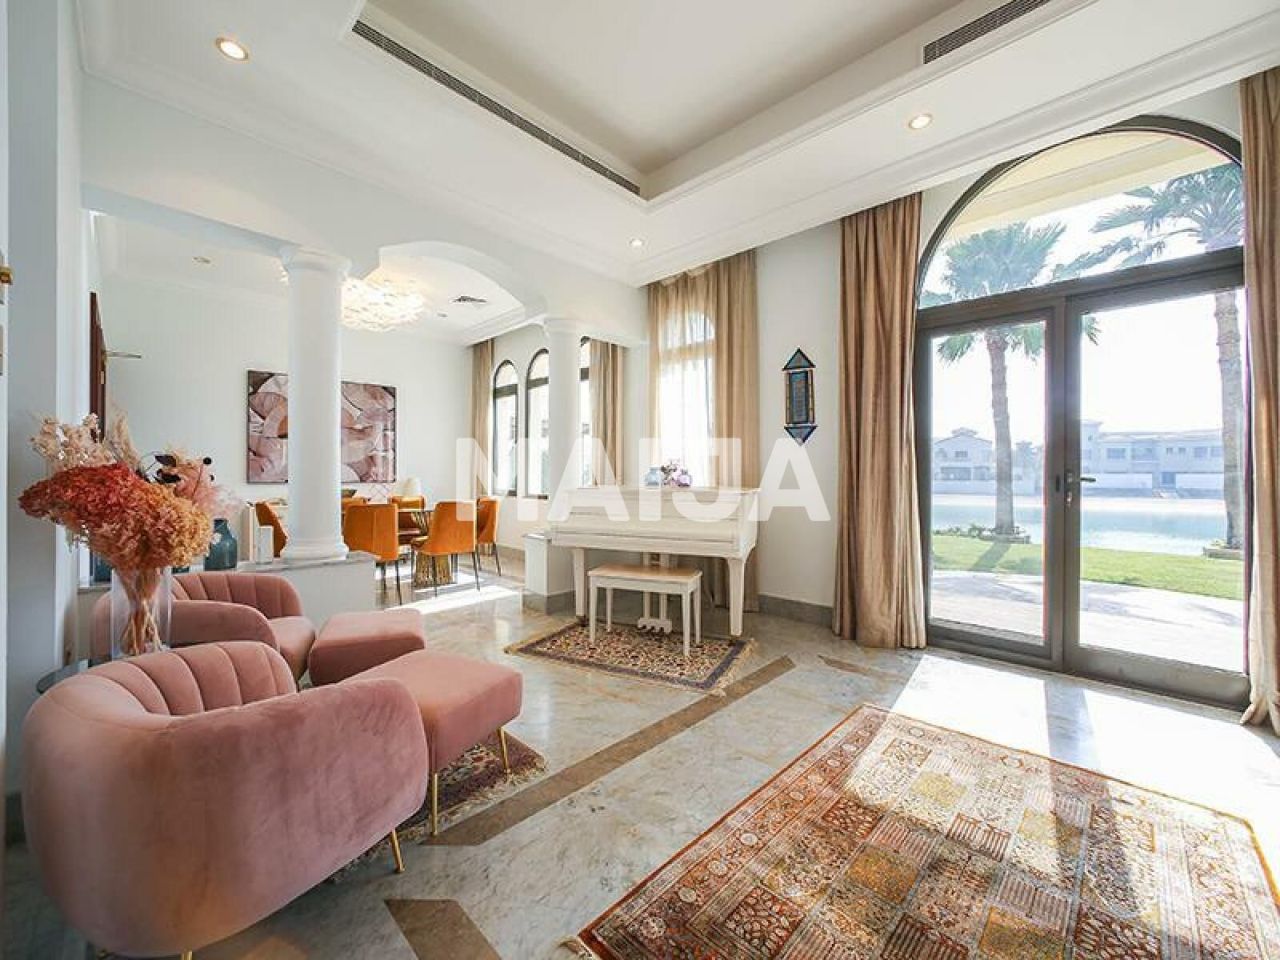 Villa in Dubai, UAE, 1 244 sq.m - picture 1